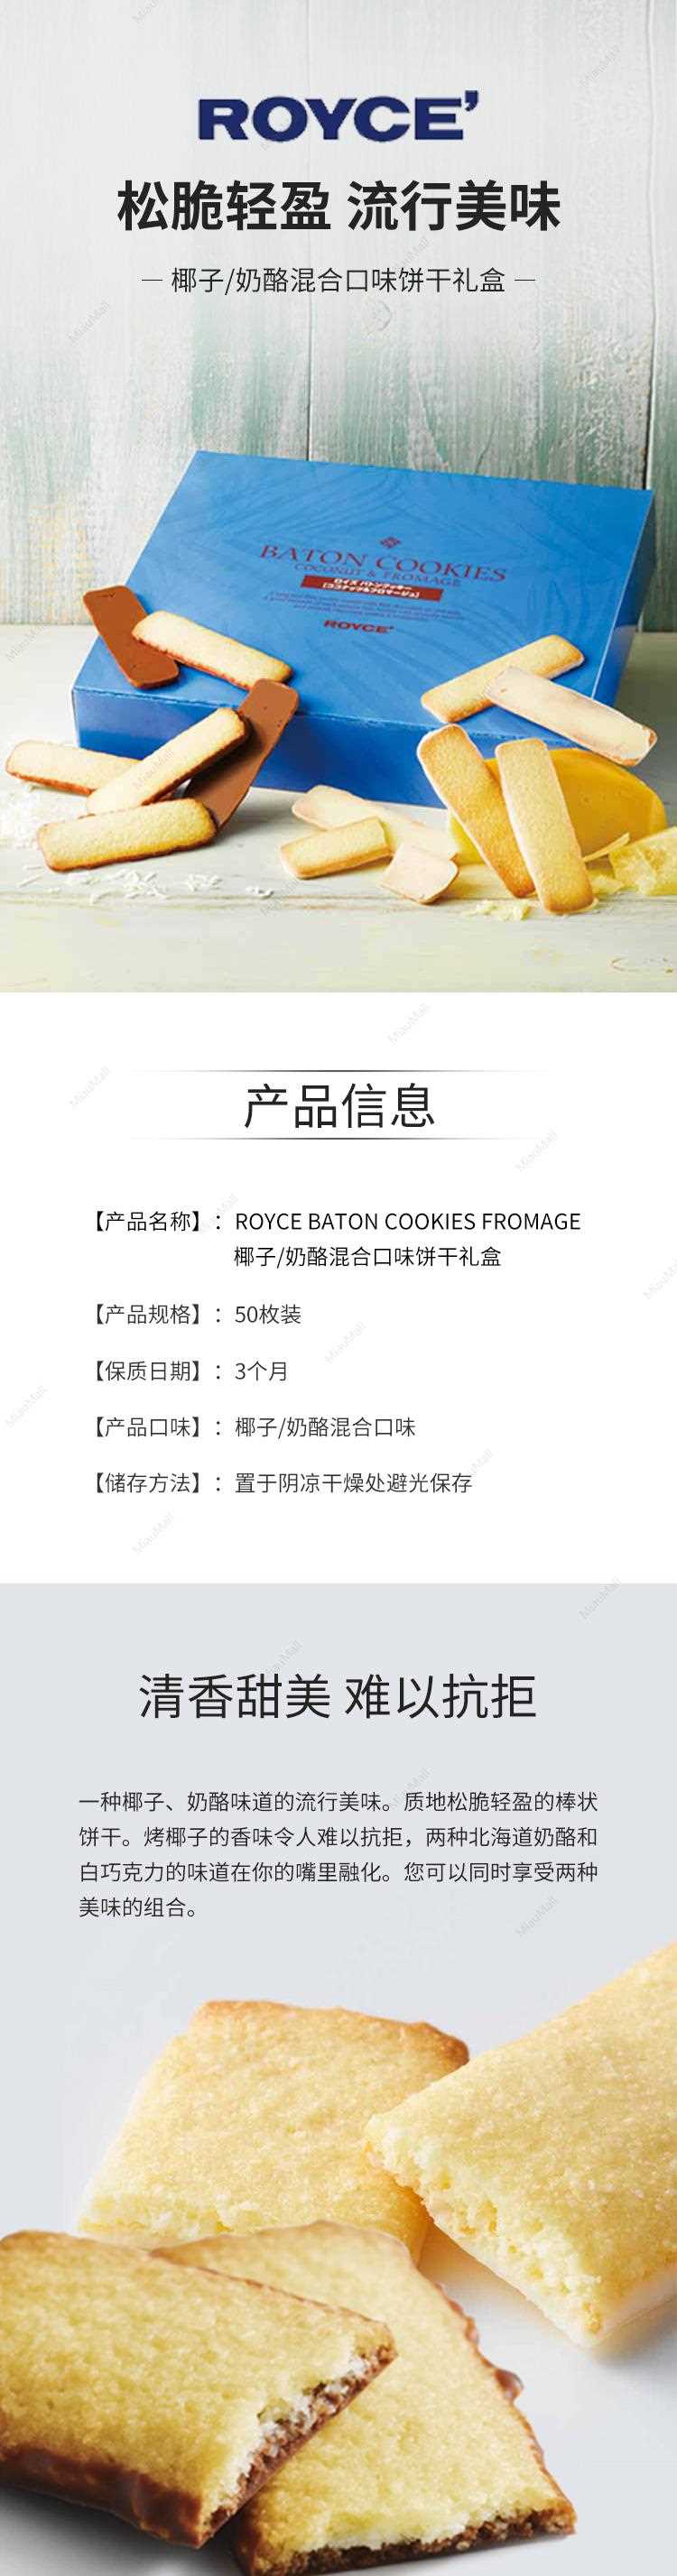 ROYCE-BATON-COOKIES-FROMAGE椰子奶酪混合口味饼干礼盒50枚装_01.jpg